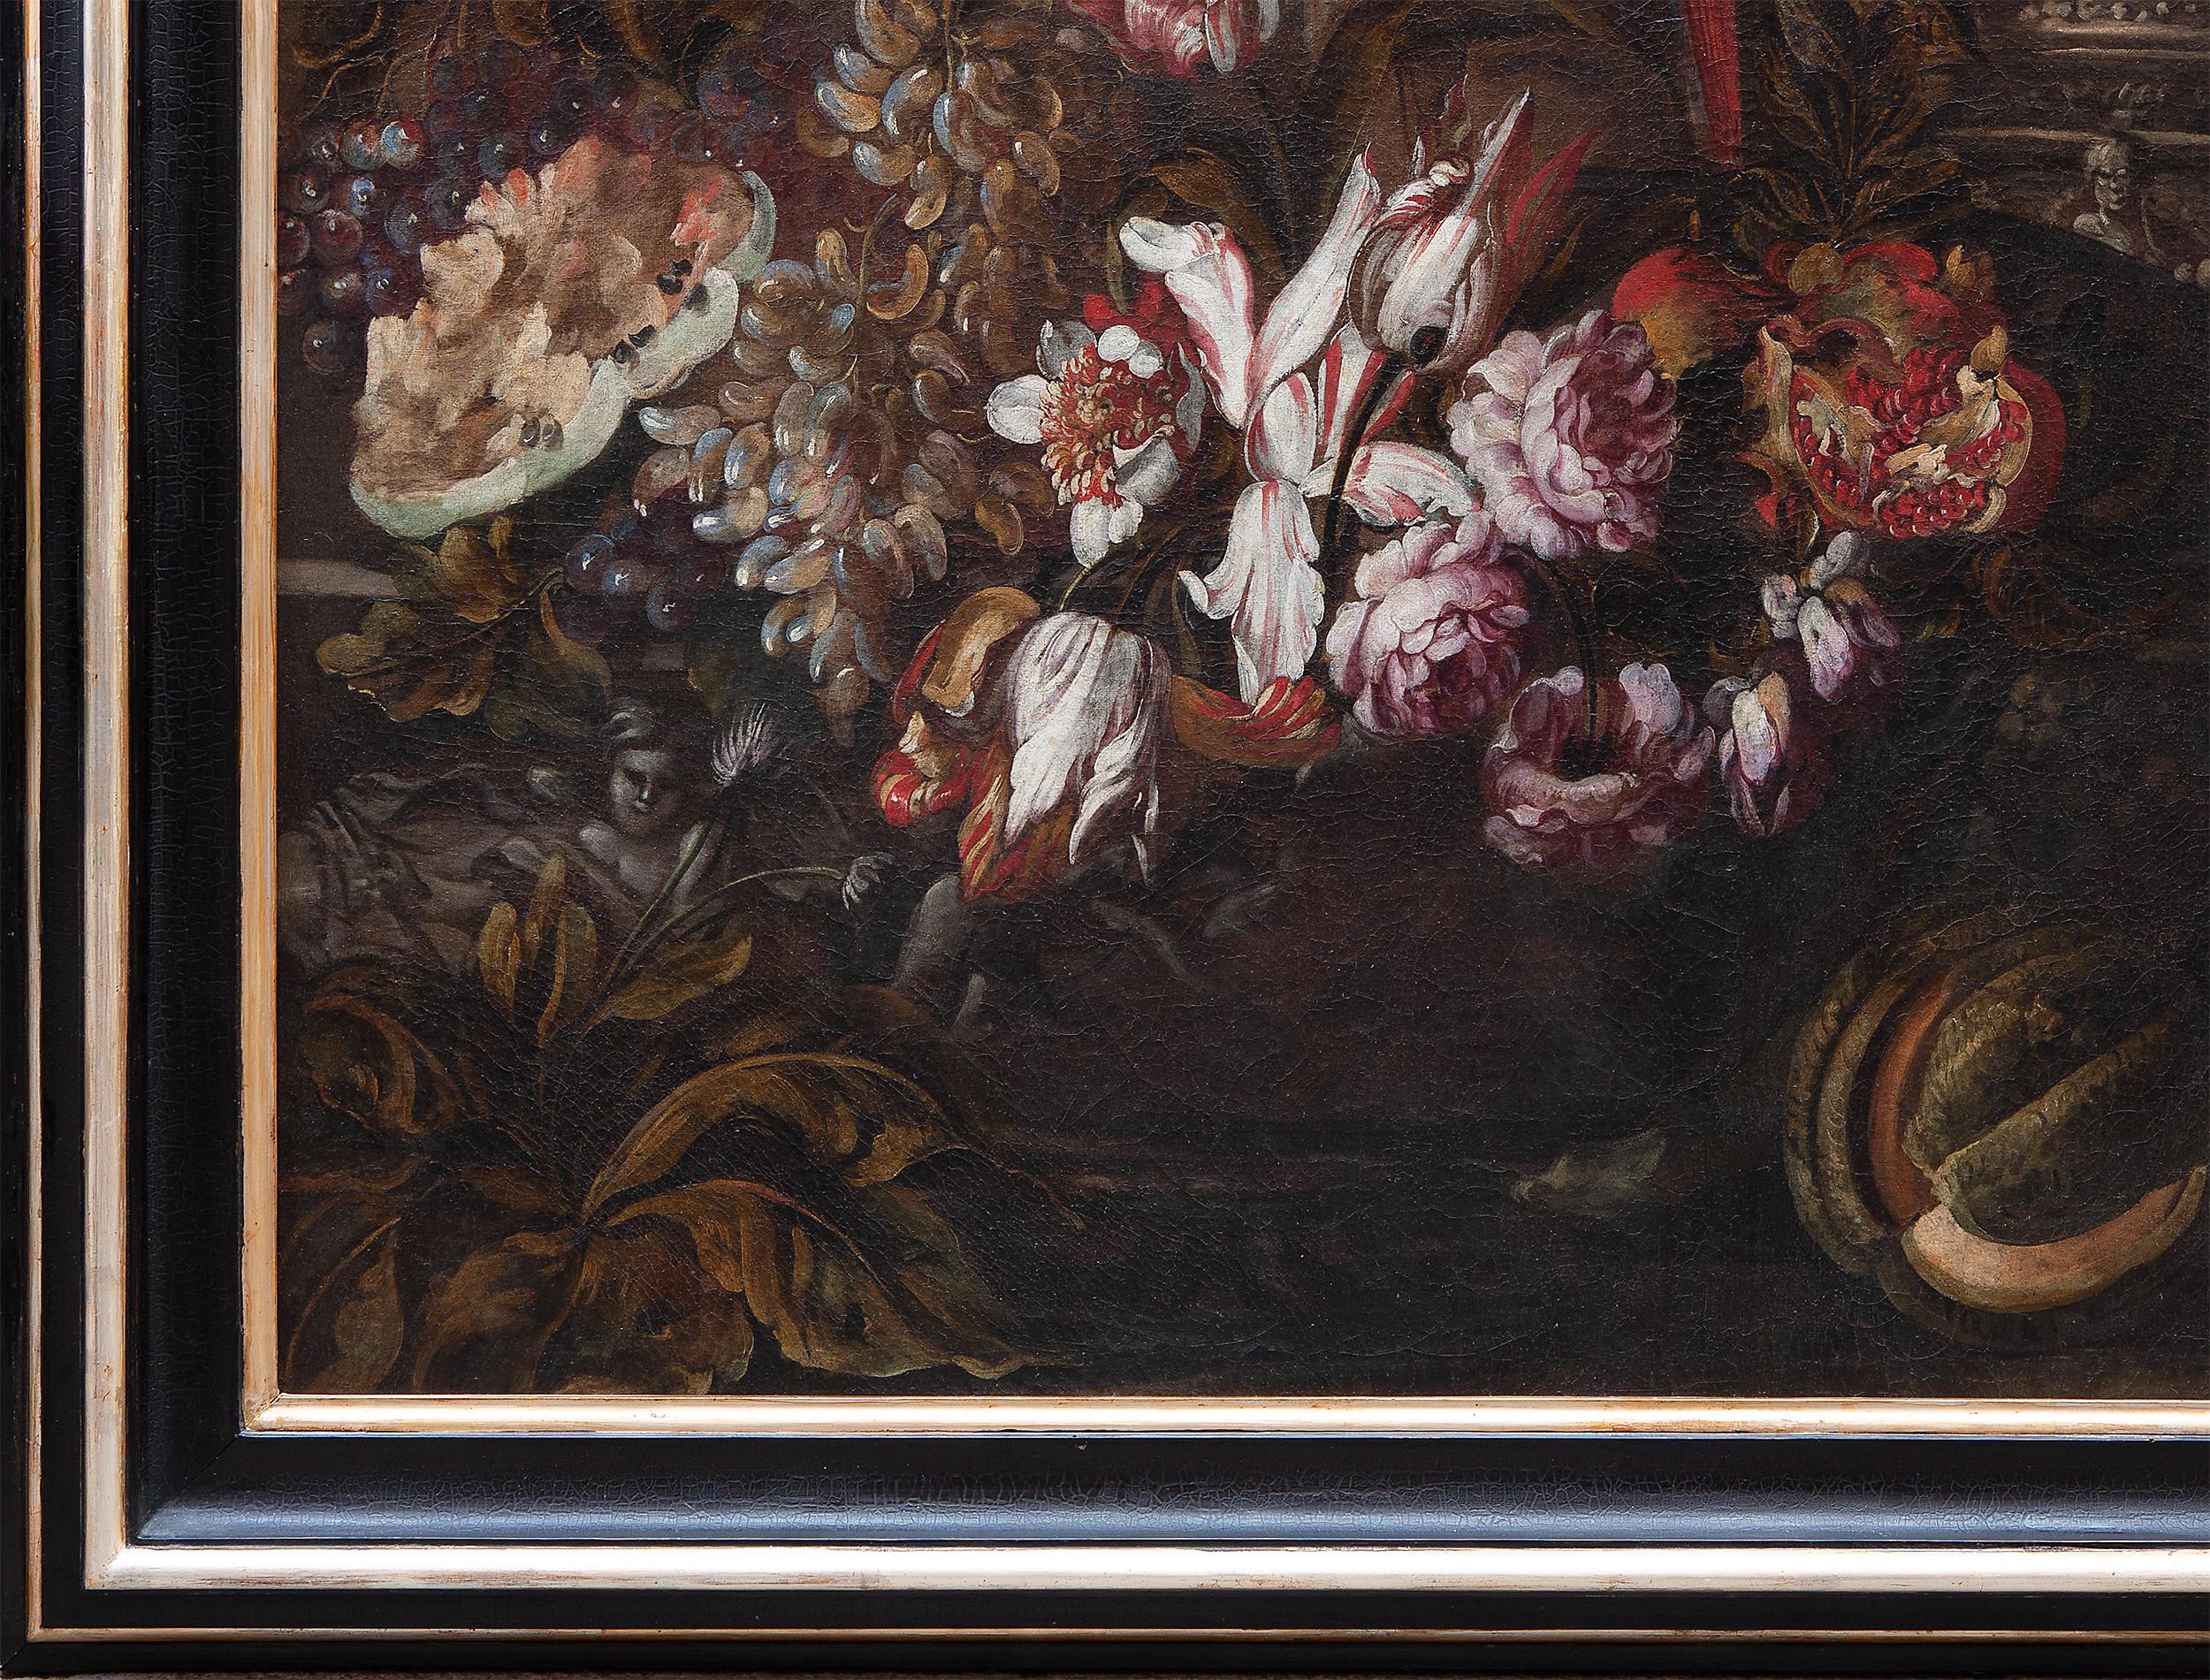 Stilleben mit Blumen, Obst, verzierten Vasen, einem Papagei und einem Affen  – Painting von Unknown